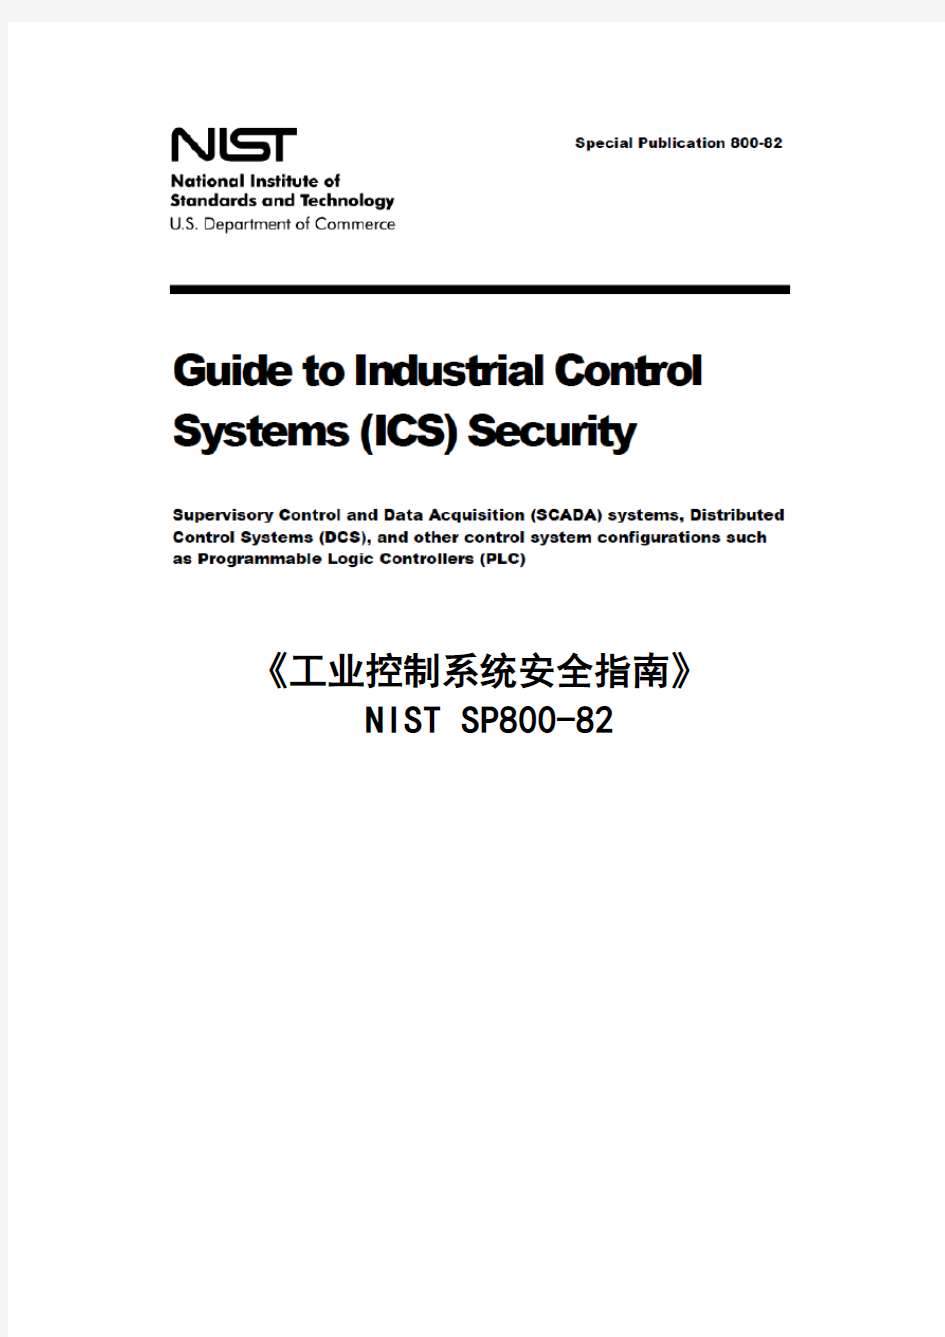 《工业控制系统安全指南》(NIST-SP800-82)